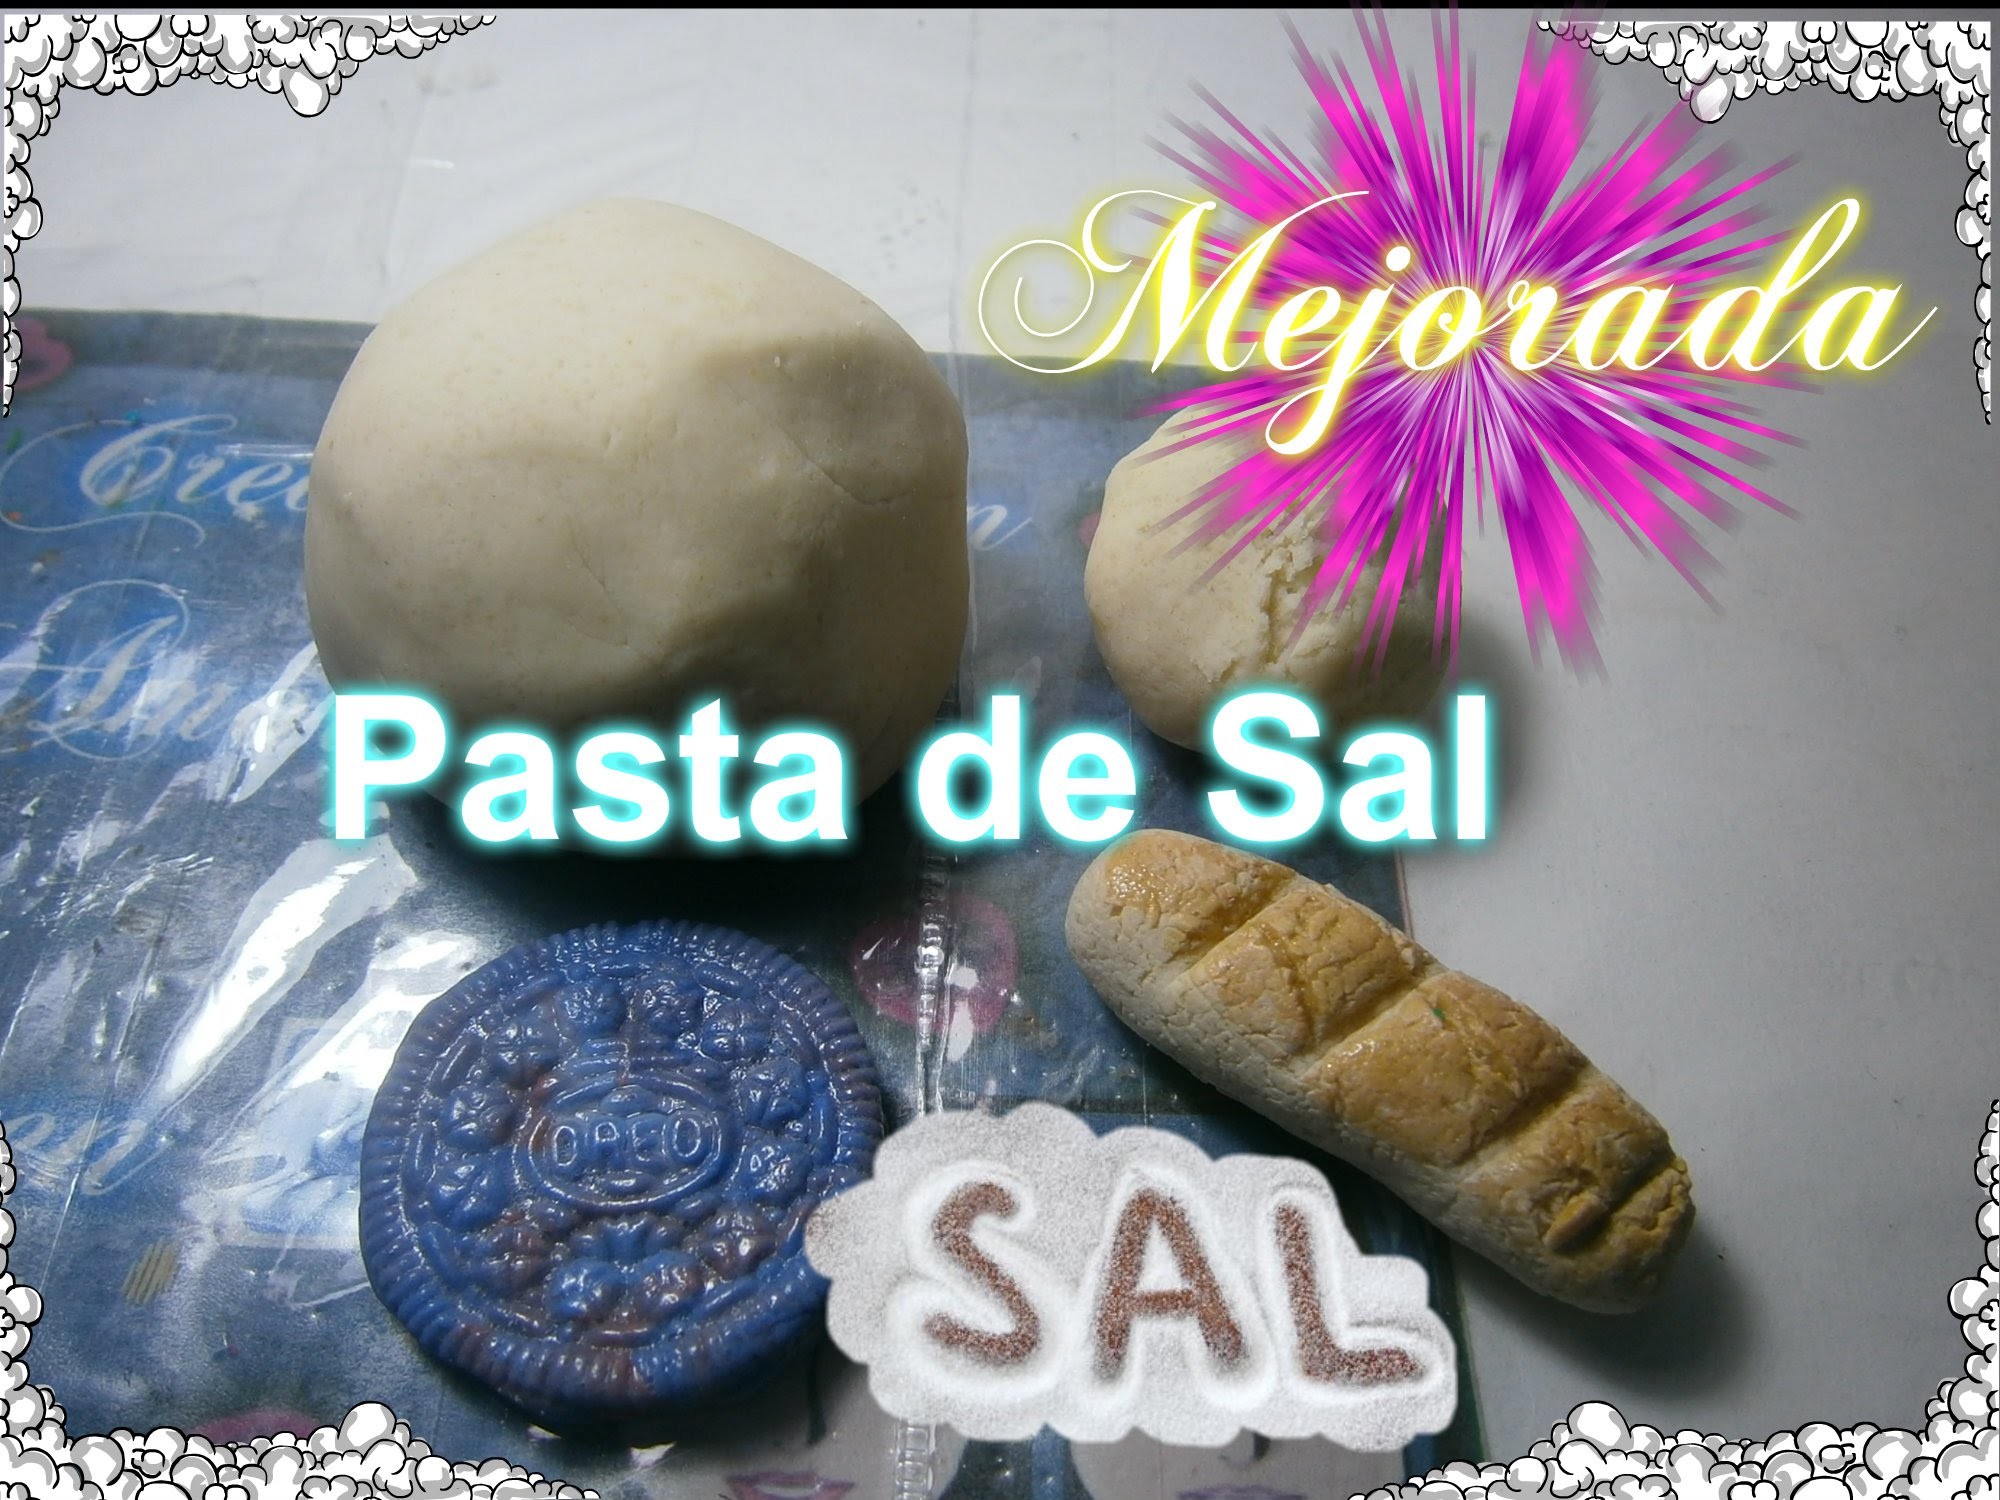 Pasta de Sal  Como Hacer pasta flexible.Fimo casero,Masa moldeable, Arcilla polimerica casera